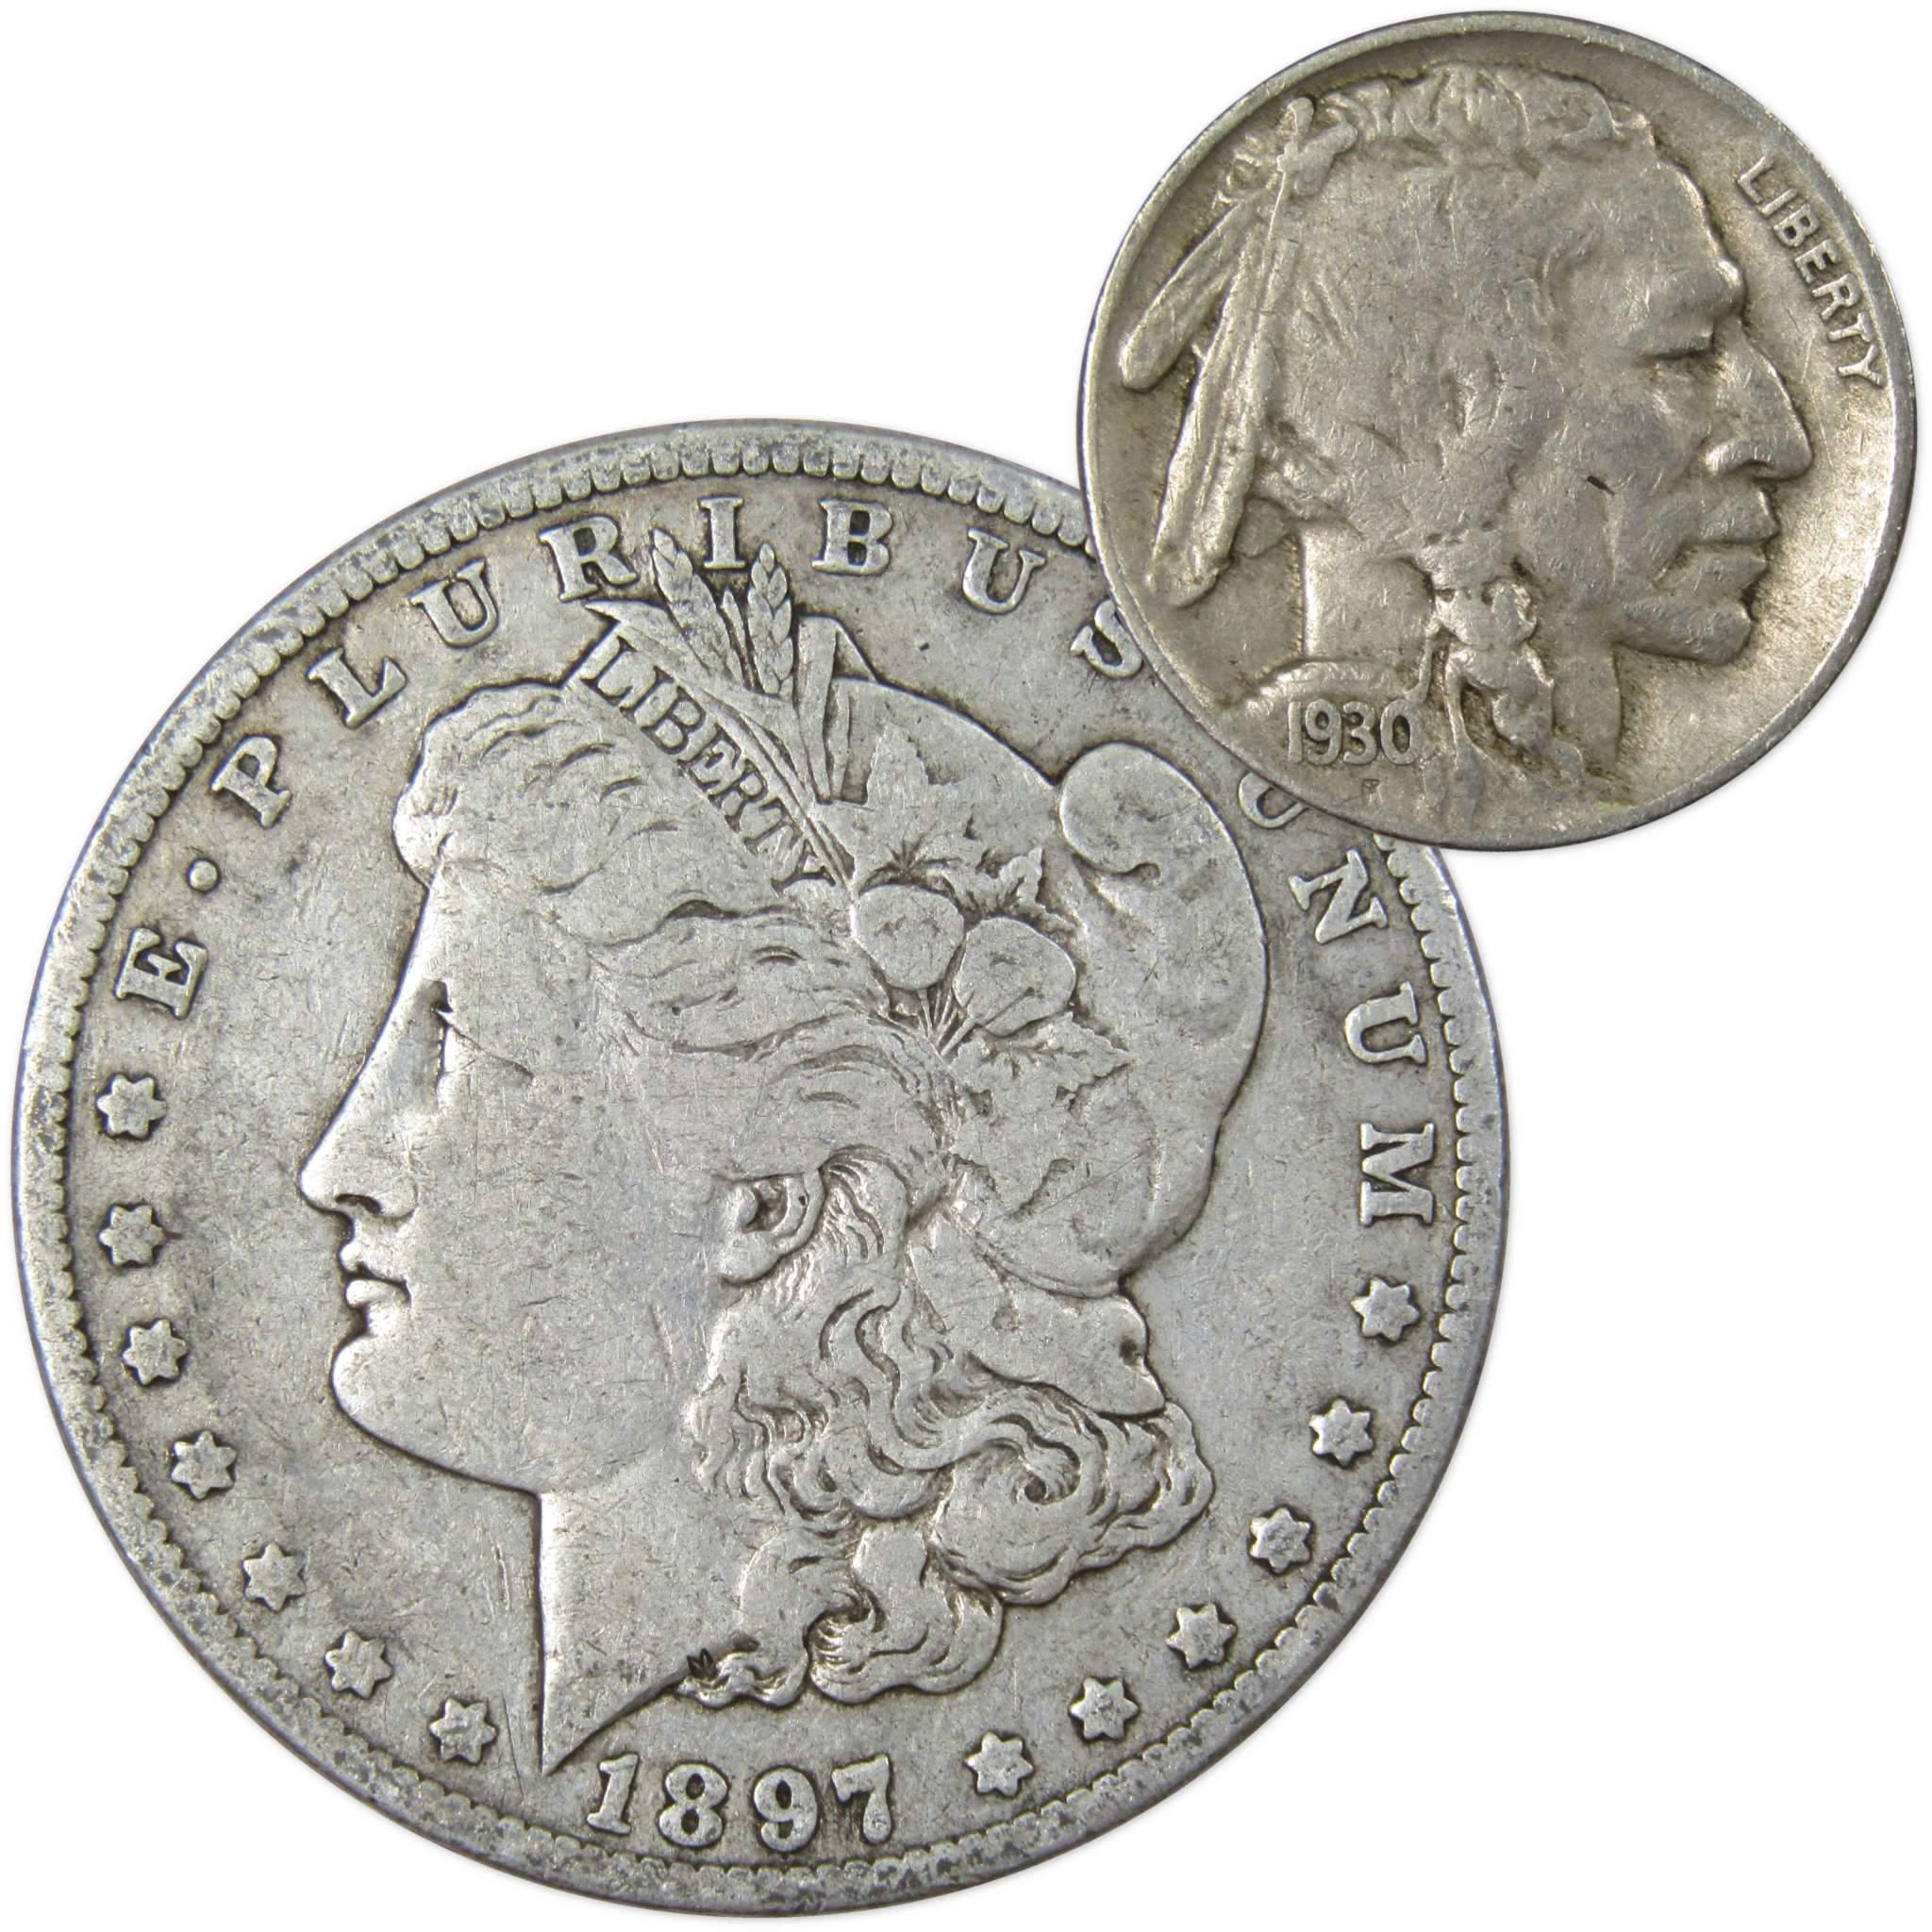 1897 O Morgan Dollar VG Very Good 90% Silver with 1930 S Buffalo Nickel F Fine - Morgan coin - Morgan silver dollar - Morgan silver dollar for sale - Profile Coins &amp; Collectibles